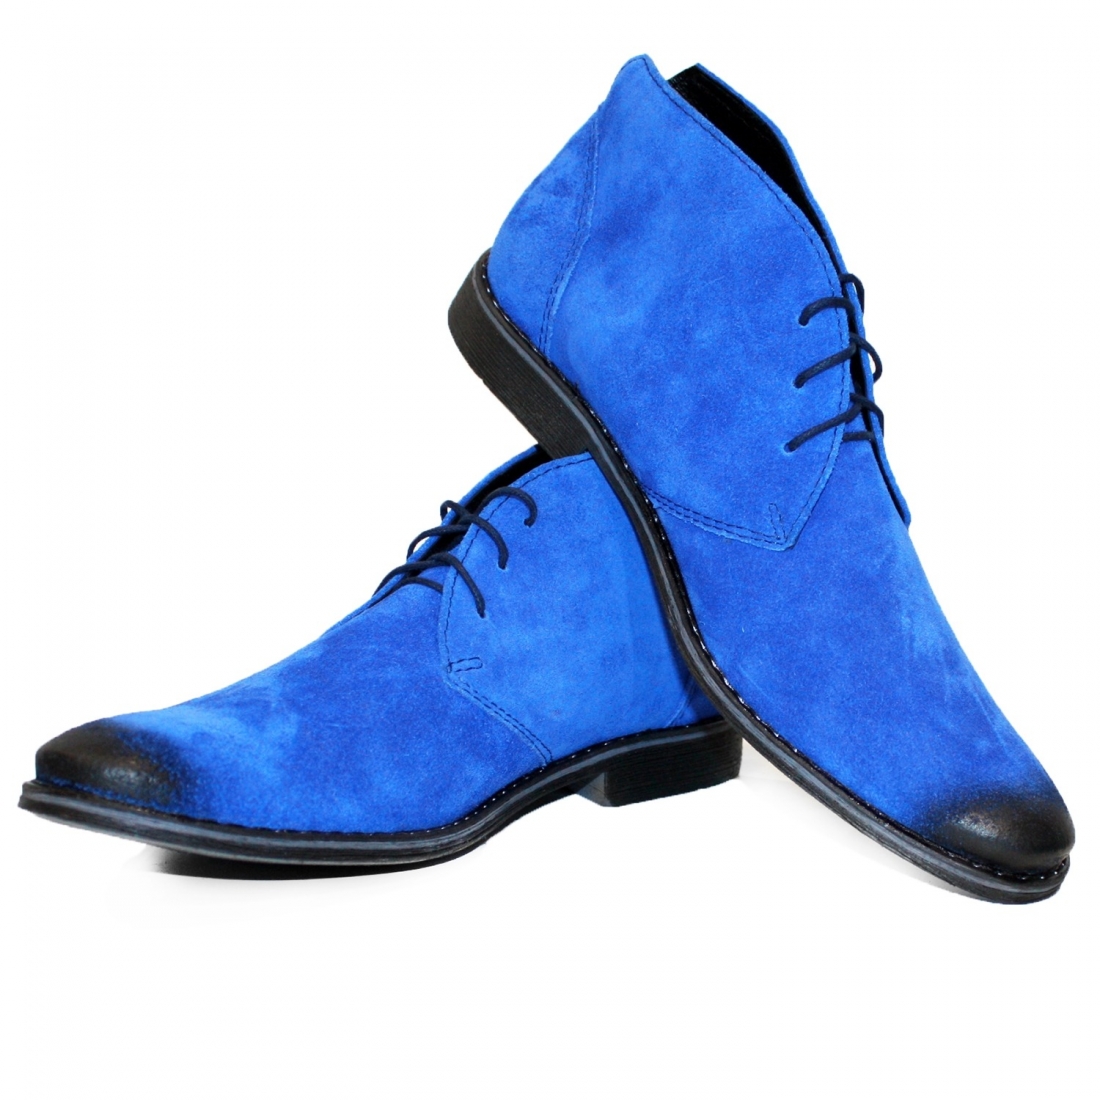 Modello Bilgetto - チャッカブーツ - Handmade Colorful Italian Leather Shoes